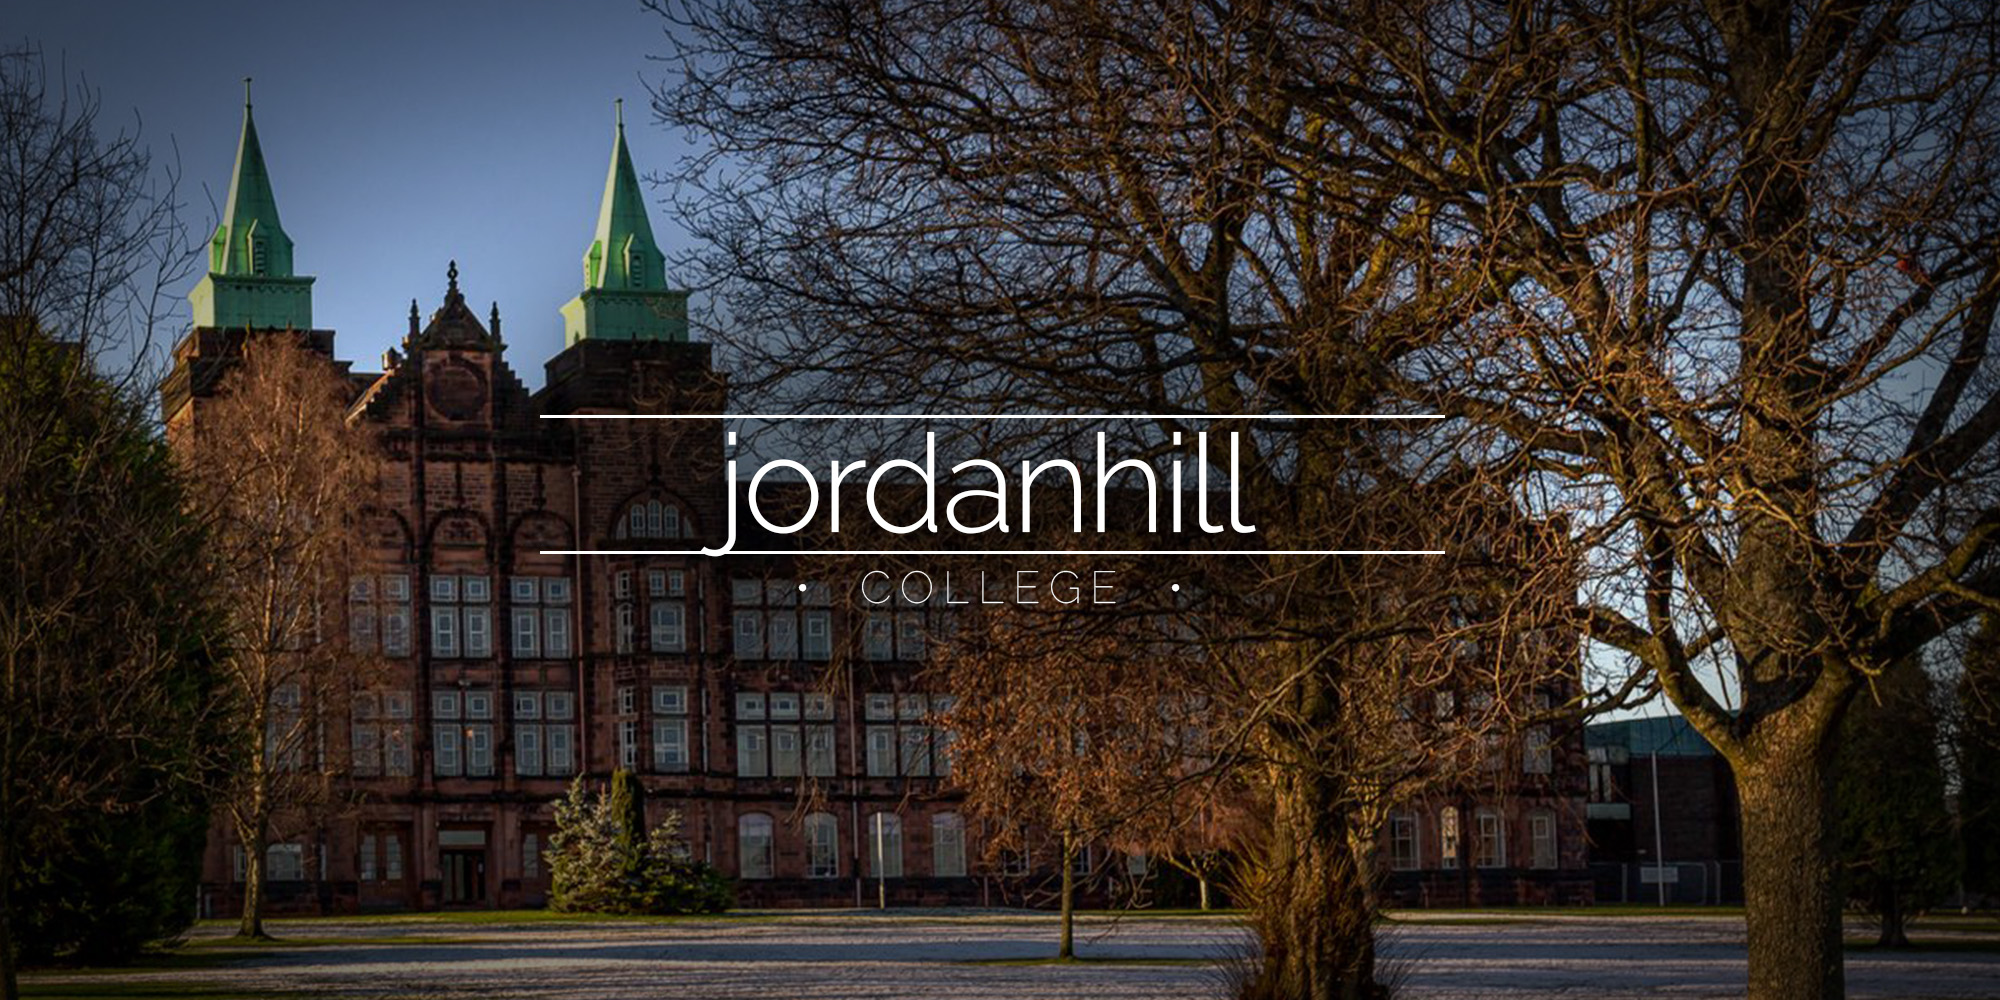 Jordanhill College, Glasgow, Scotland